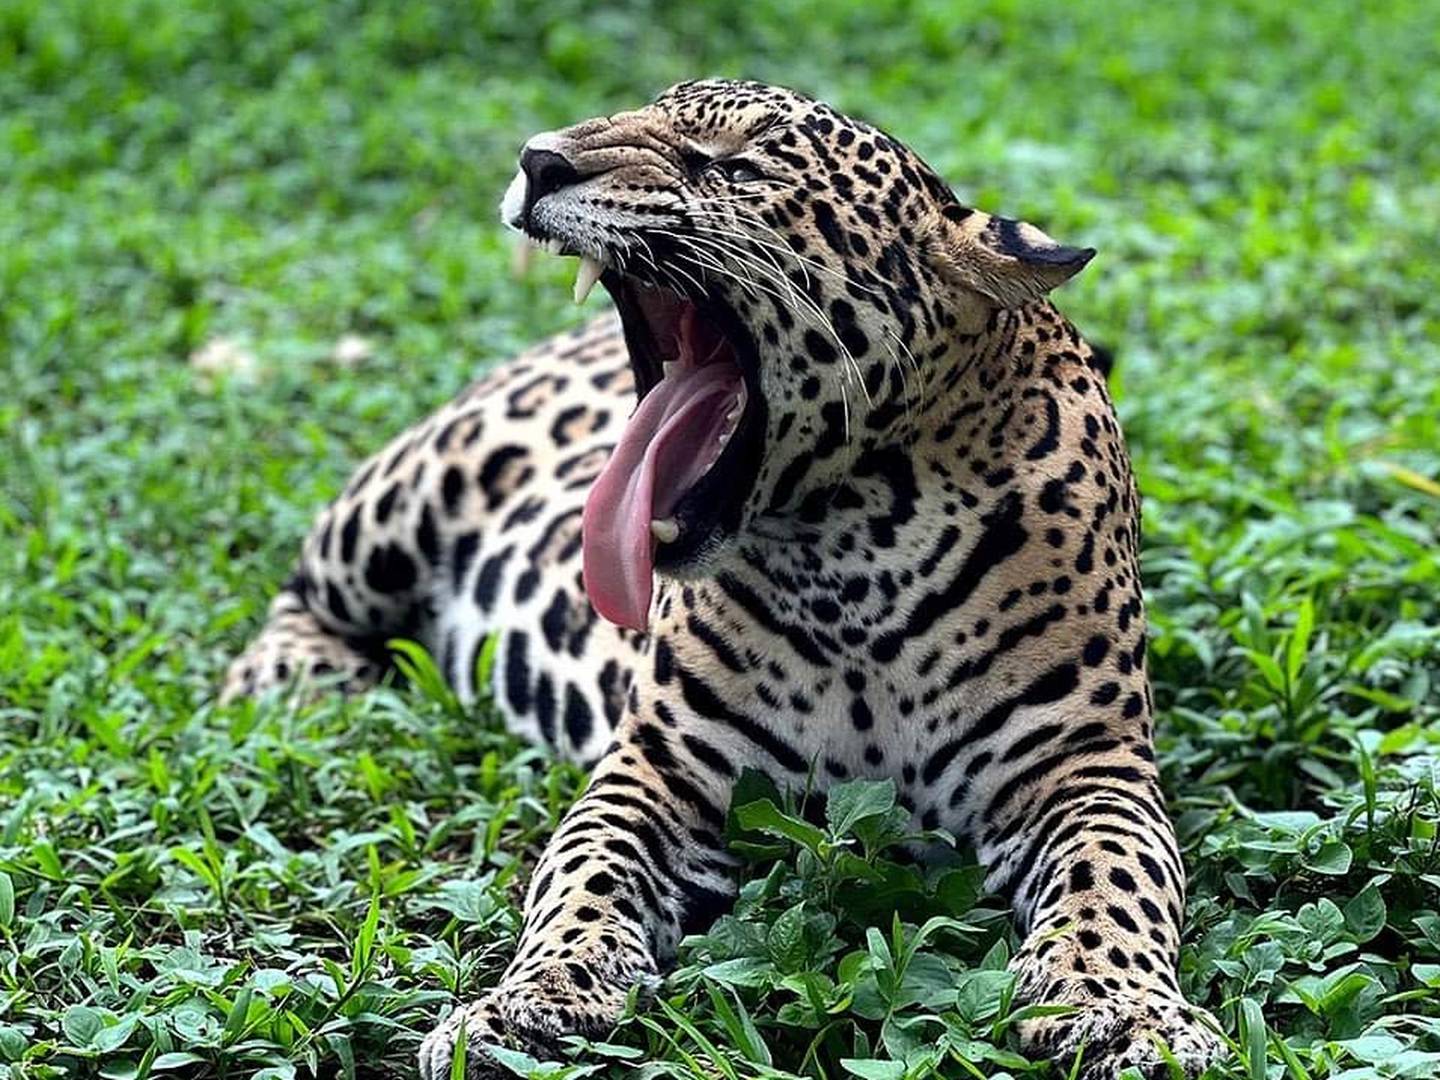 Celeste la jaguar tica.